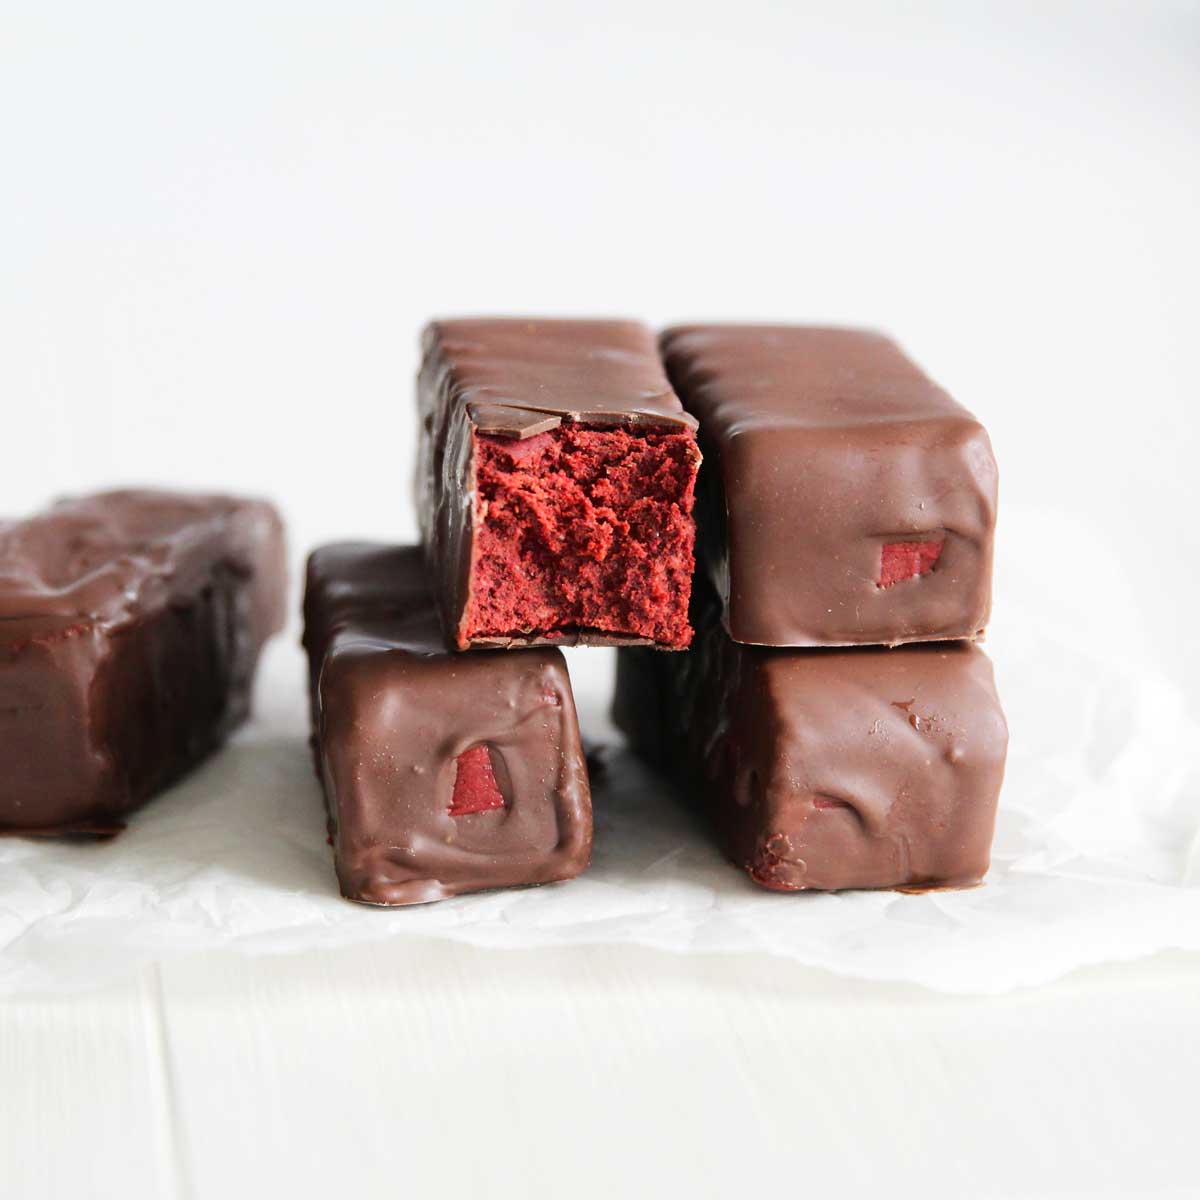 Gluten Free Red Velvet Cake Protein Bars (The Best Guilt-Free Dessert) - Zero-Sugar Whipped Cream